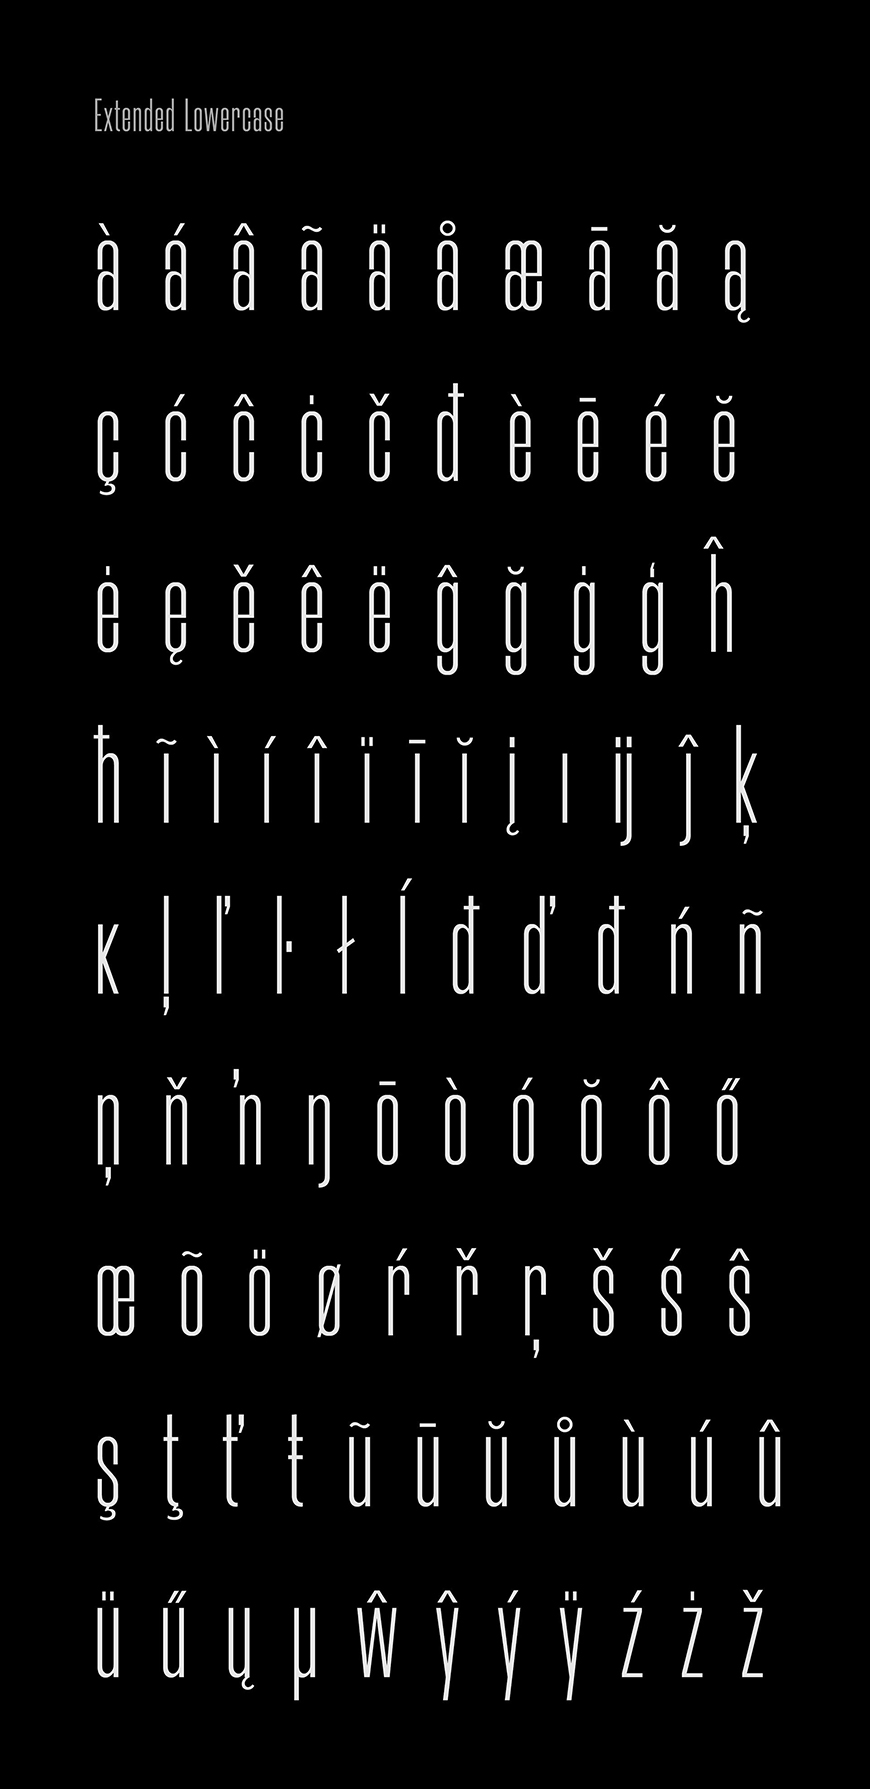 免费字体下载！一款拥有18种样式修长优雅的英文字体—Morganite